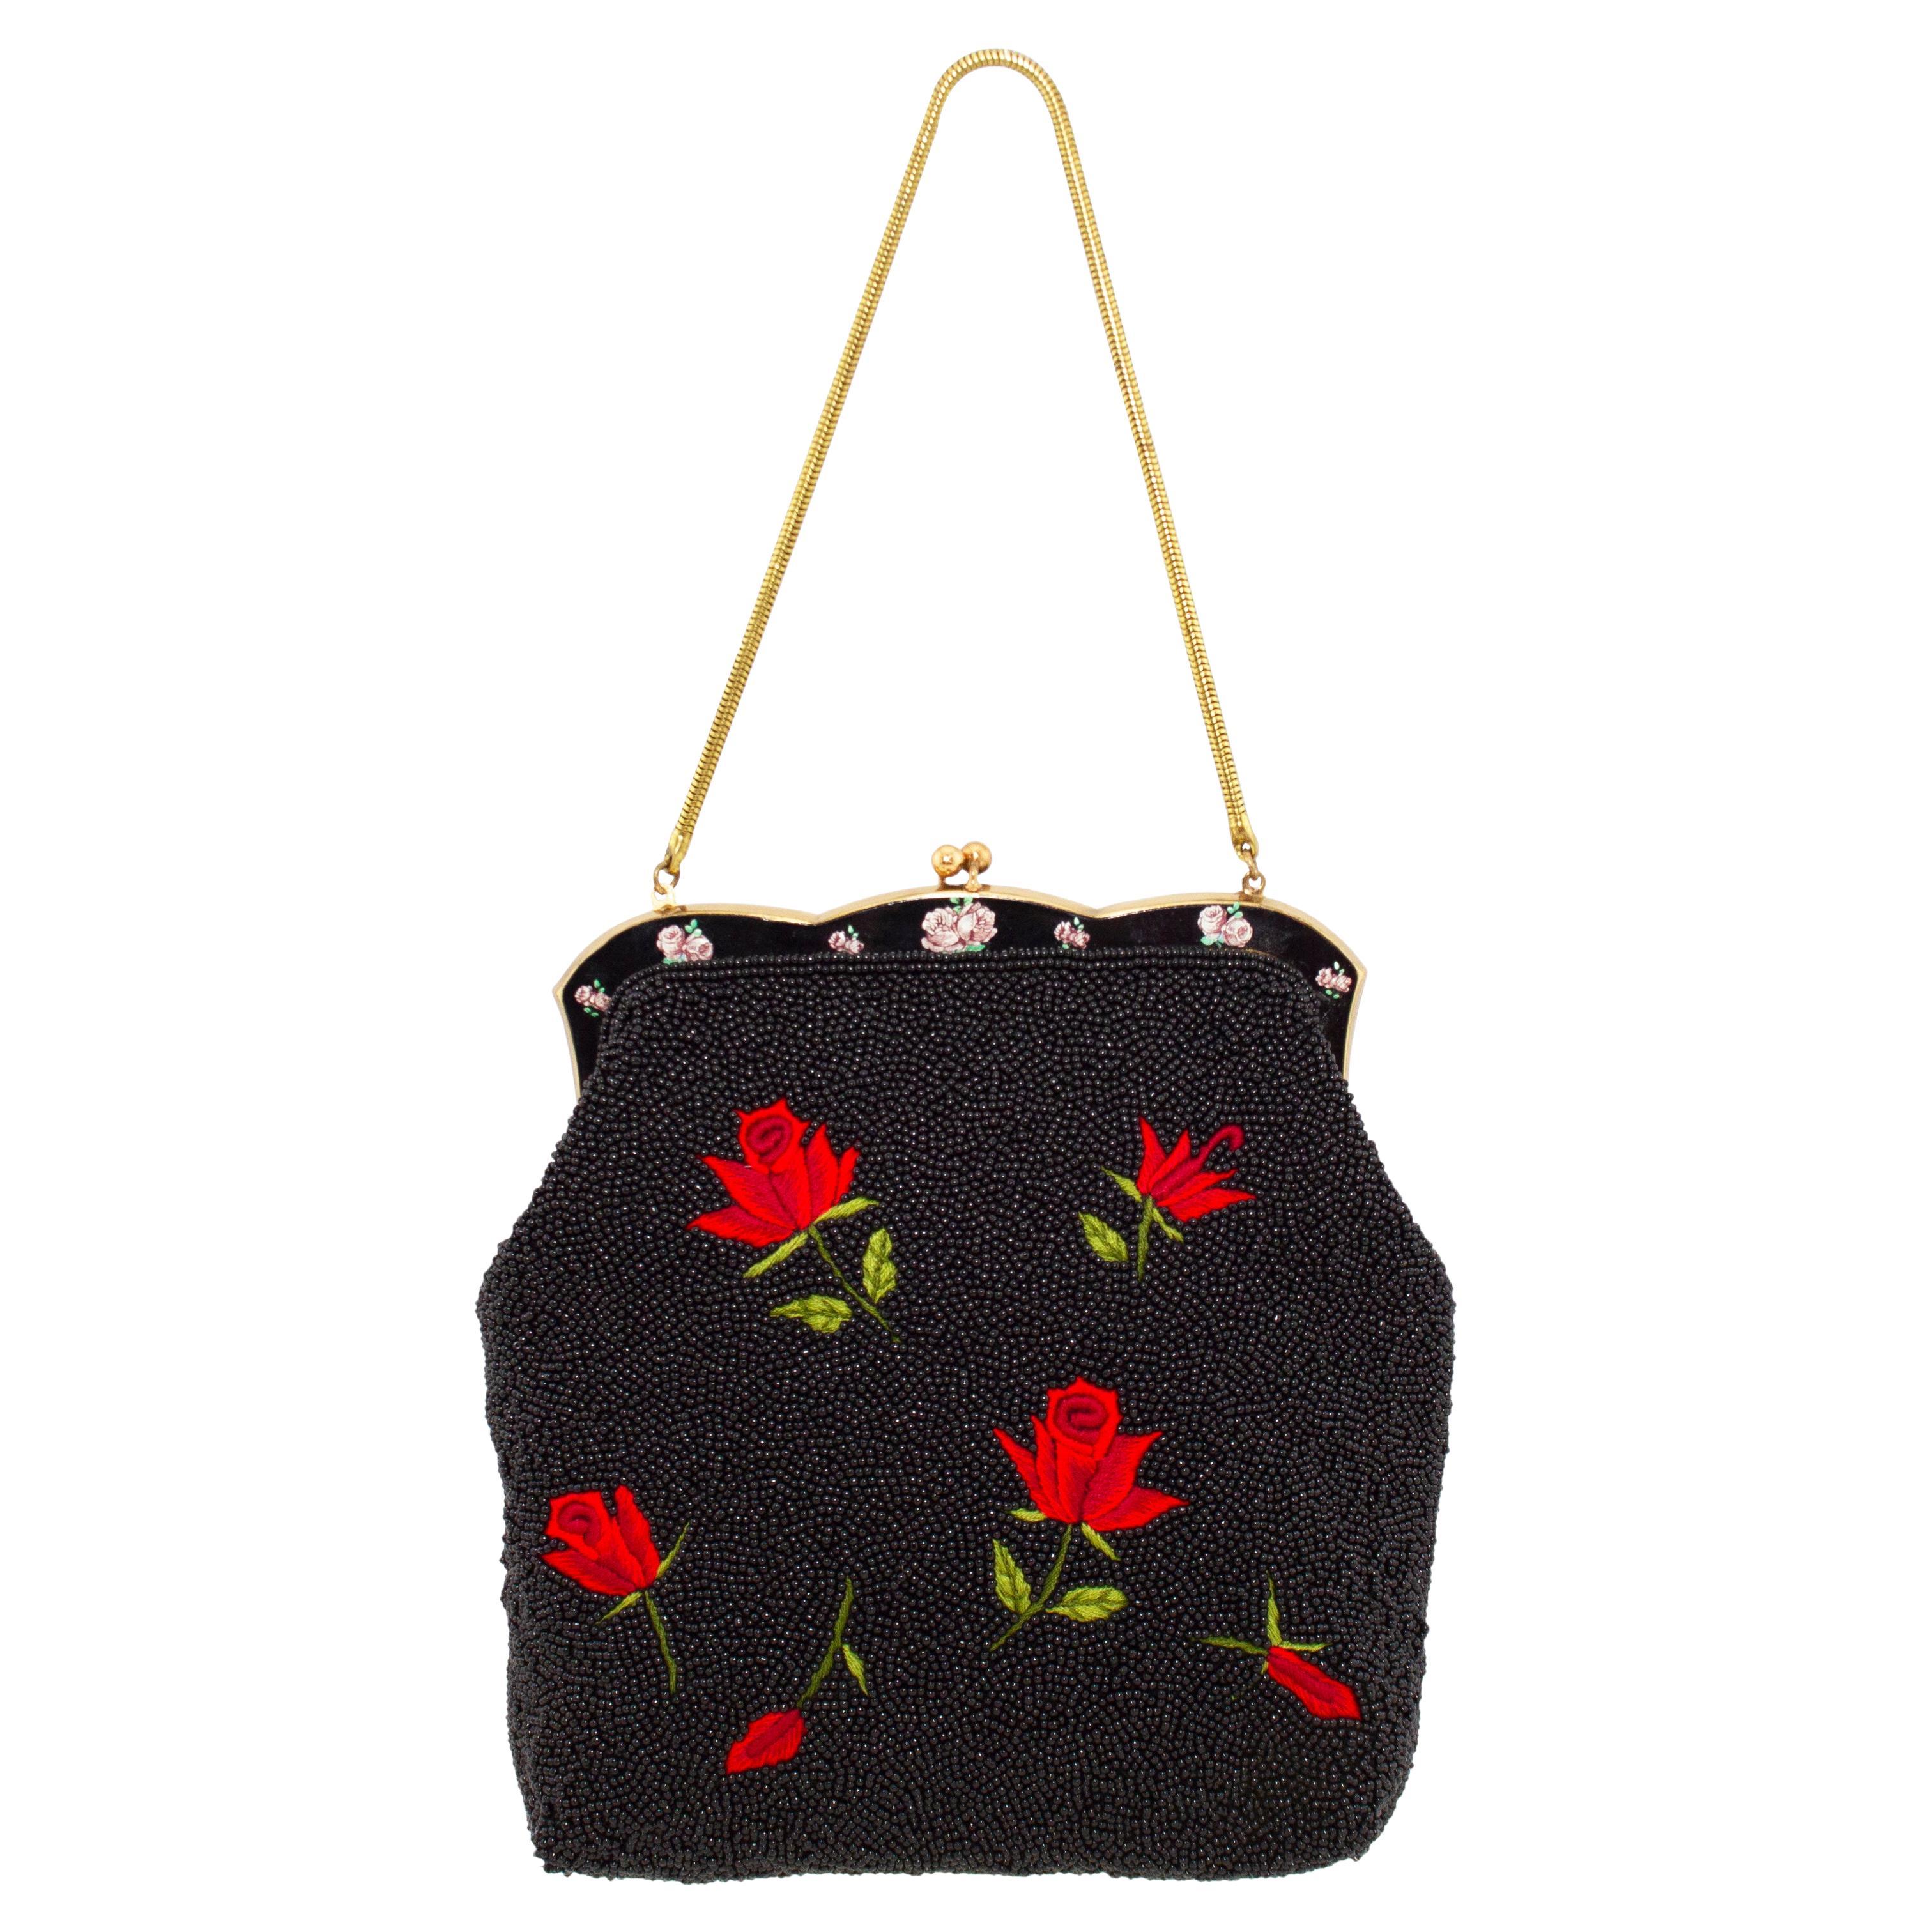 Black Velvet Beaded Purse Handbag 1980s Beaded Bag Art Nouveau Style Elegant